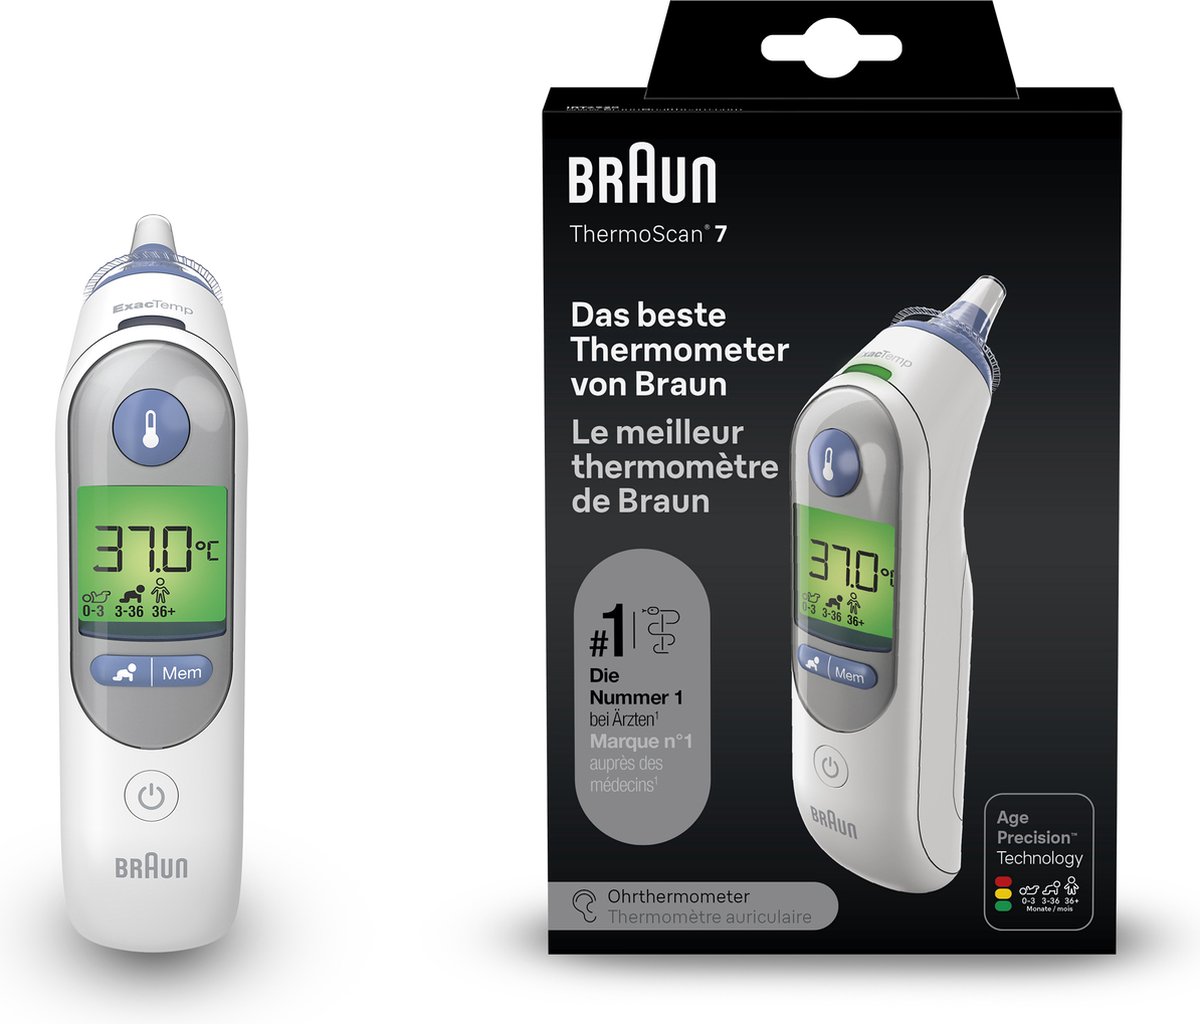 Thermometre Auto Sans Fil pas cher - Achat neuf et occasion